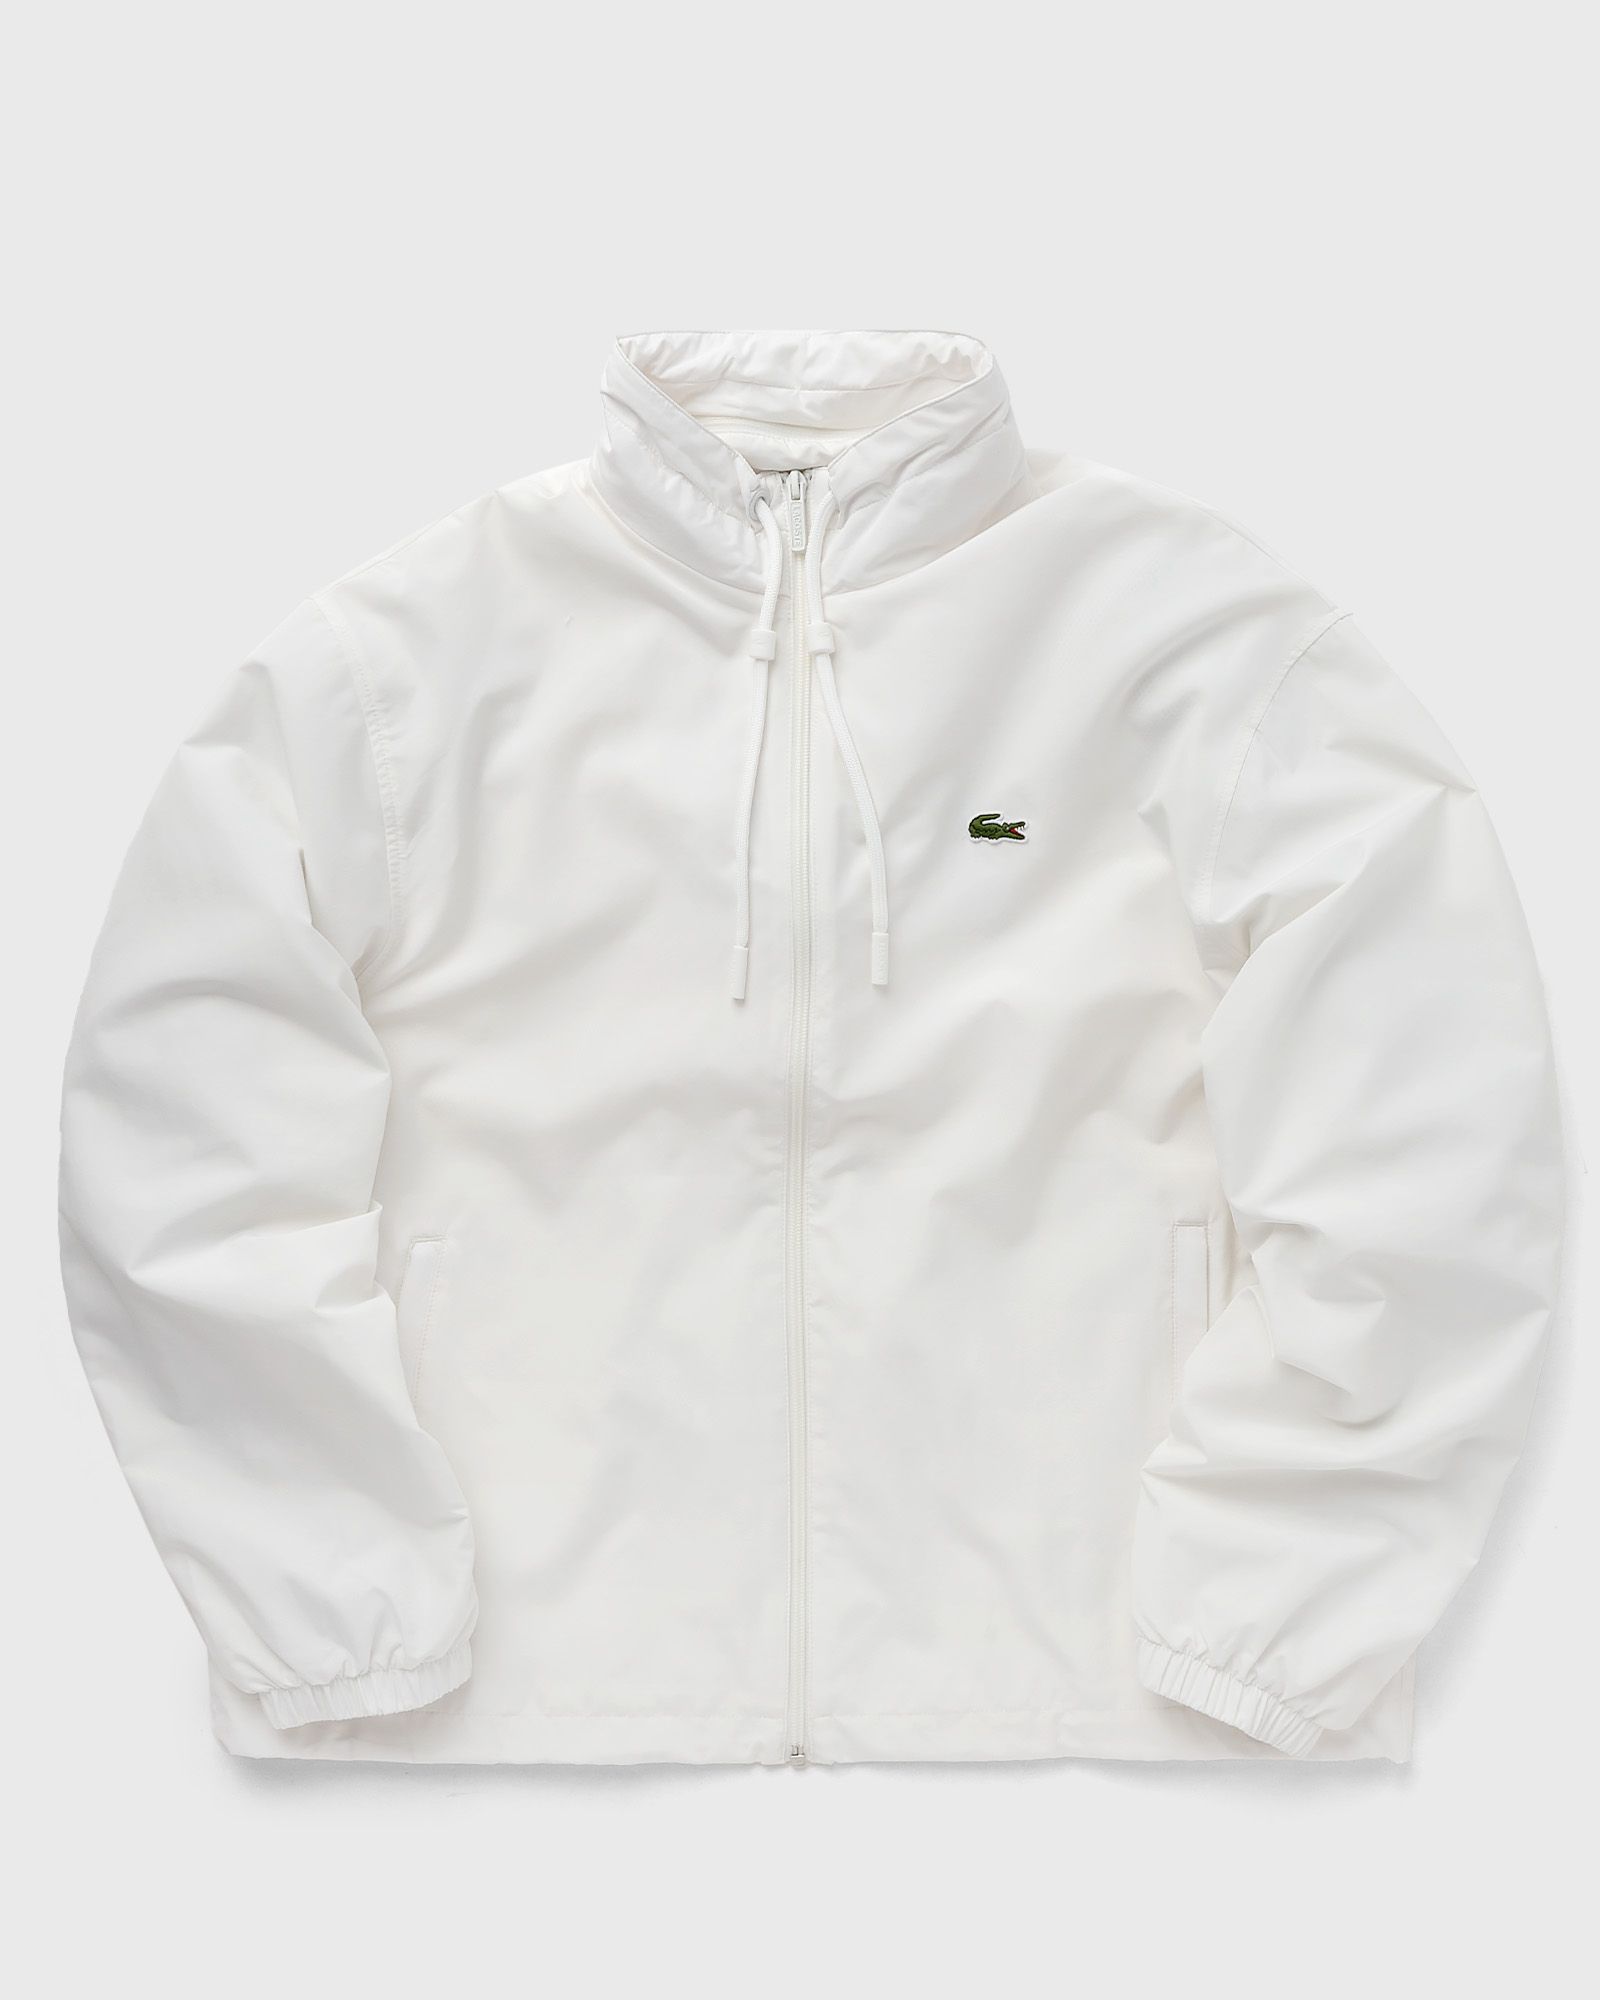 Lacoste - jacket men track jackets|windbreaker white in größe:xxl